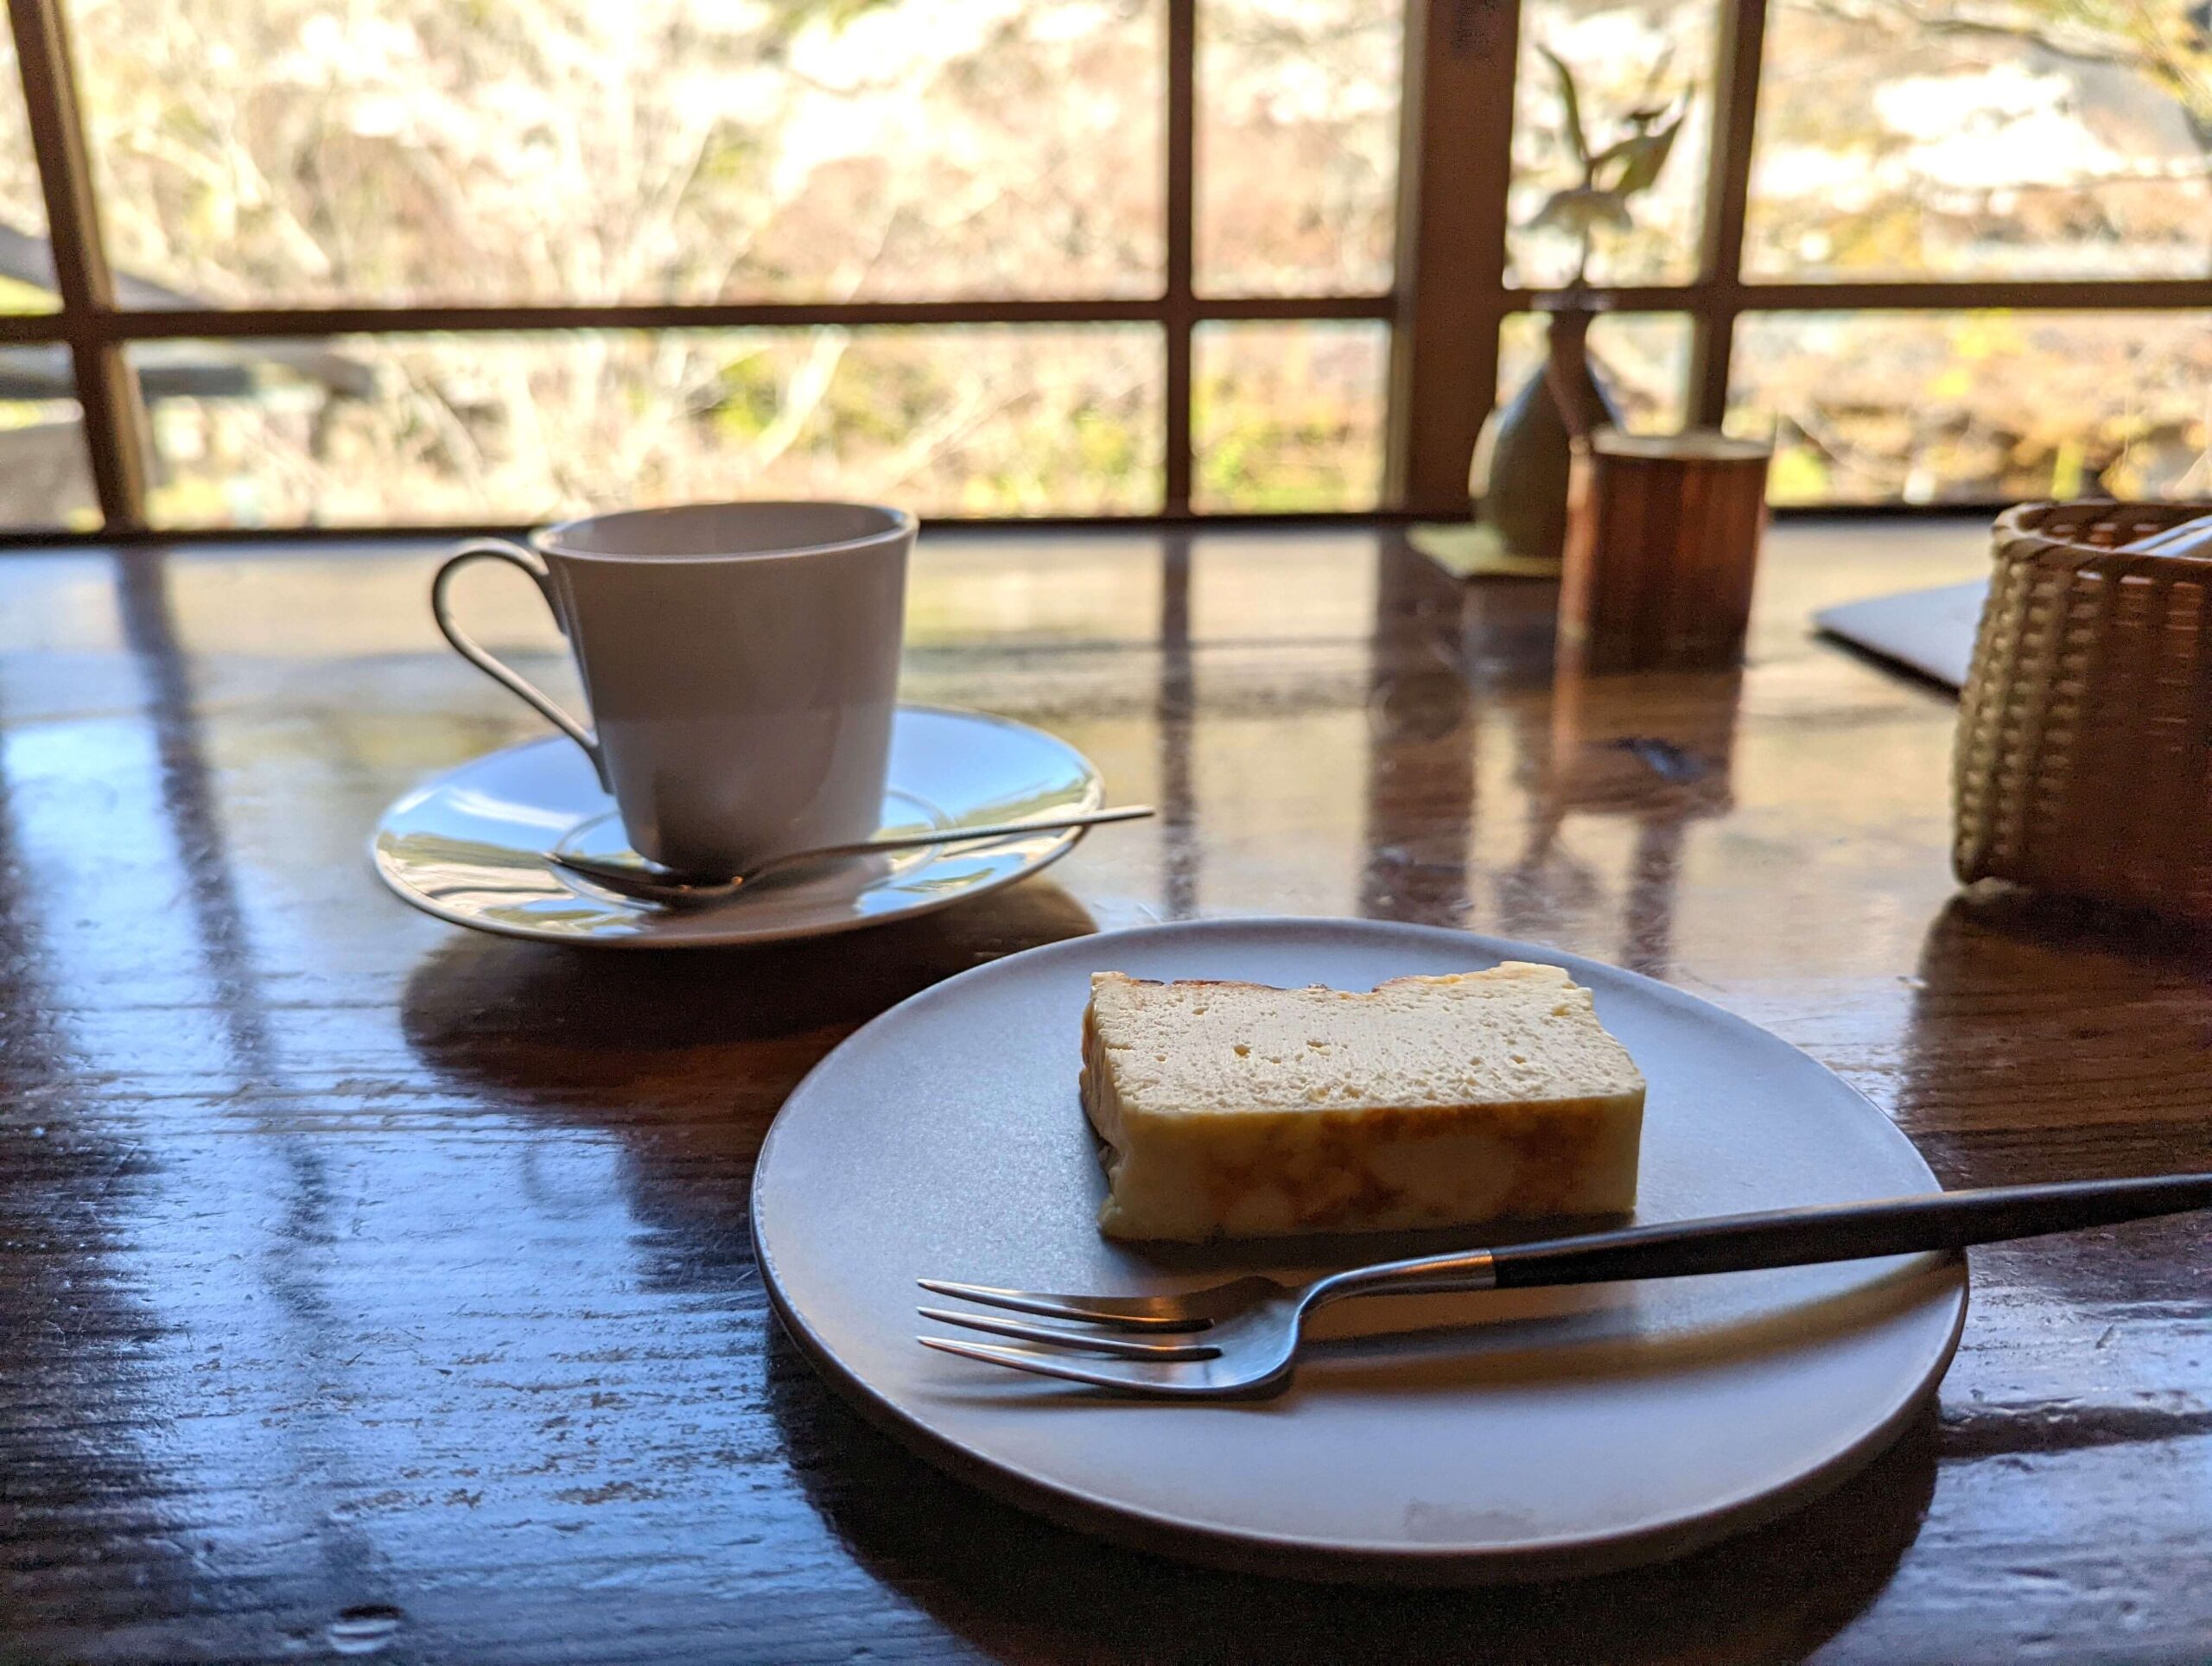 亀の井別荘・茶房天井桟敷の自家製バスクチーズケーキの写真 (3)